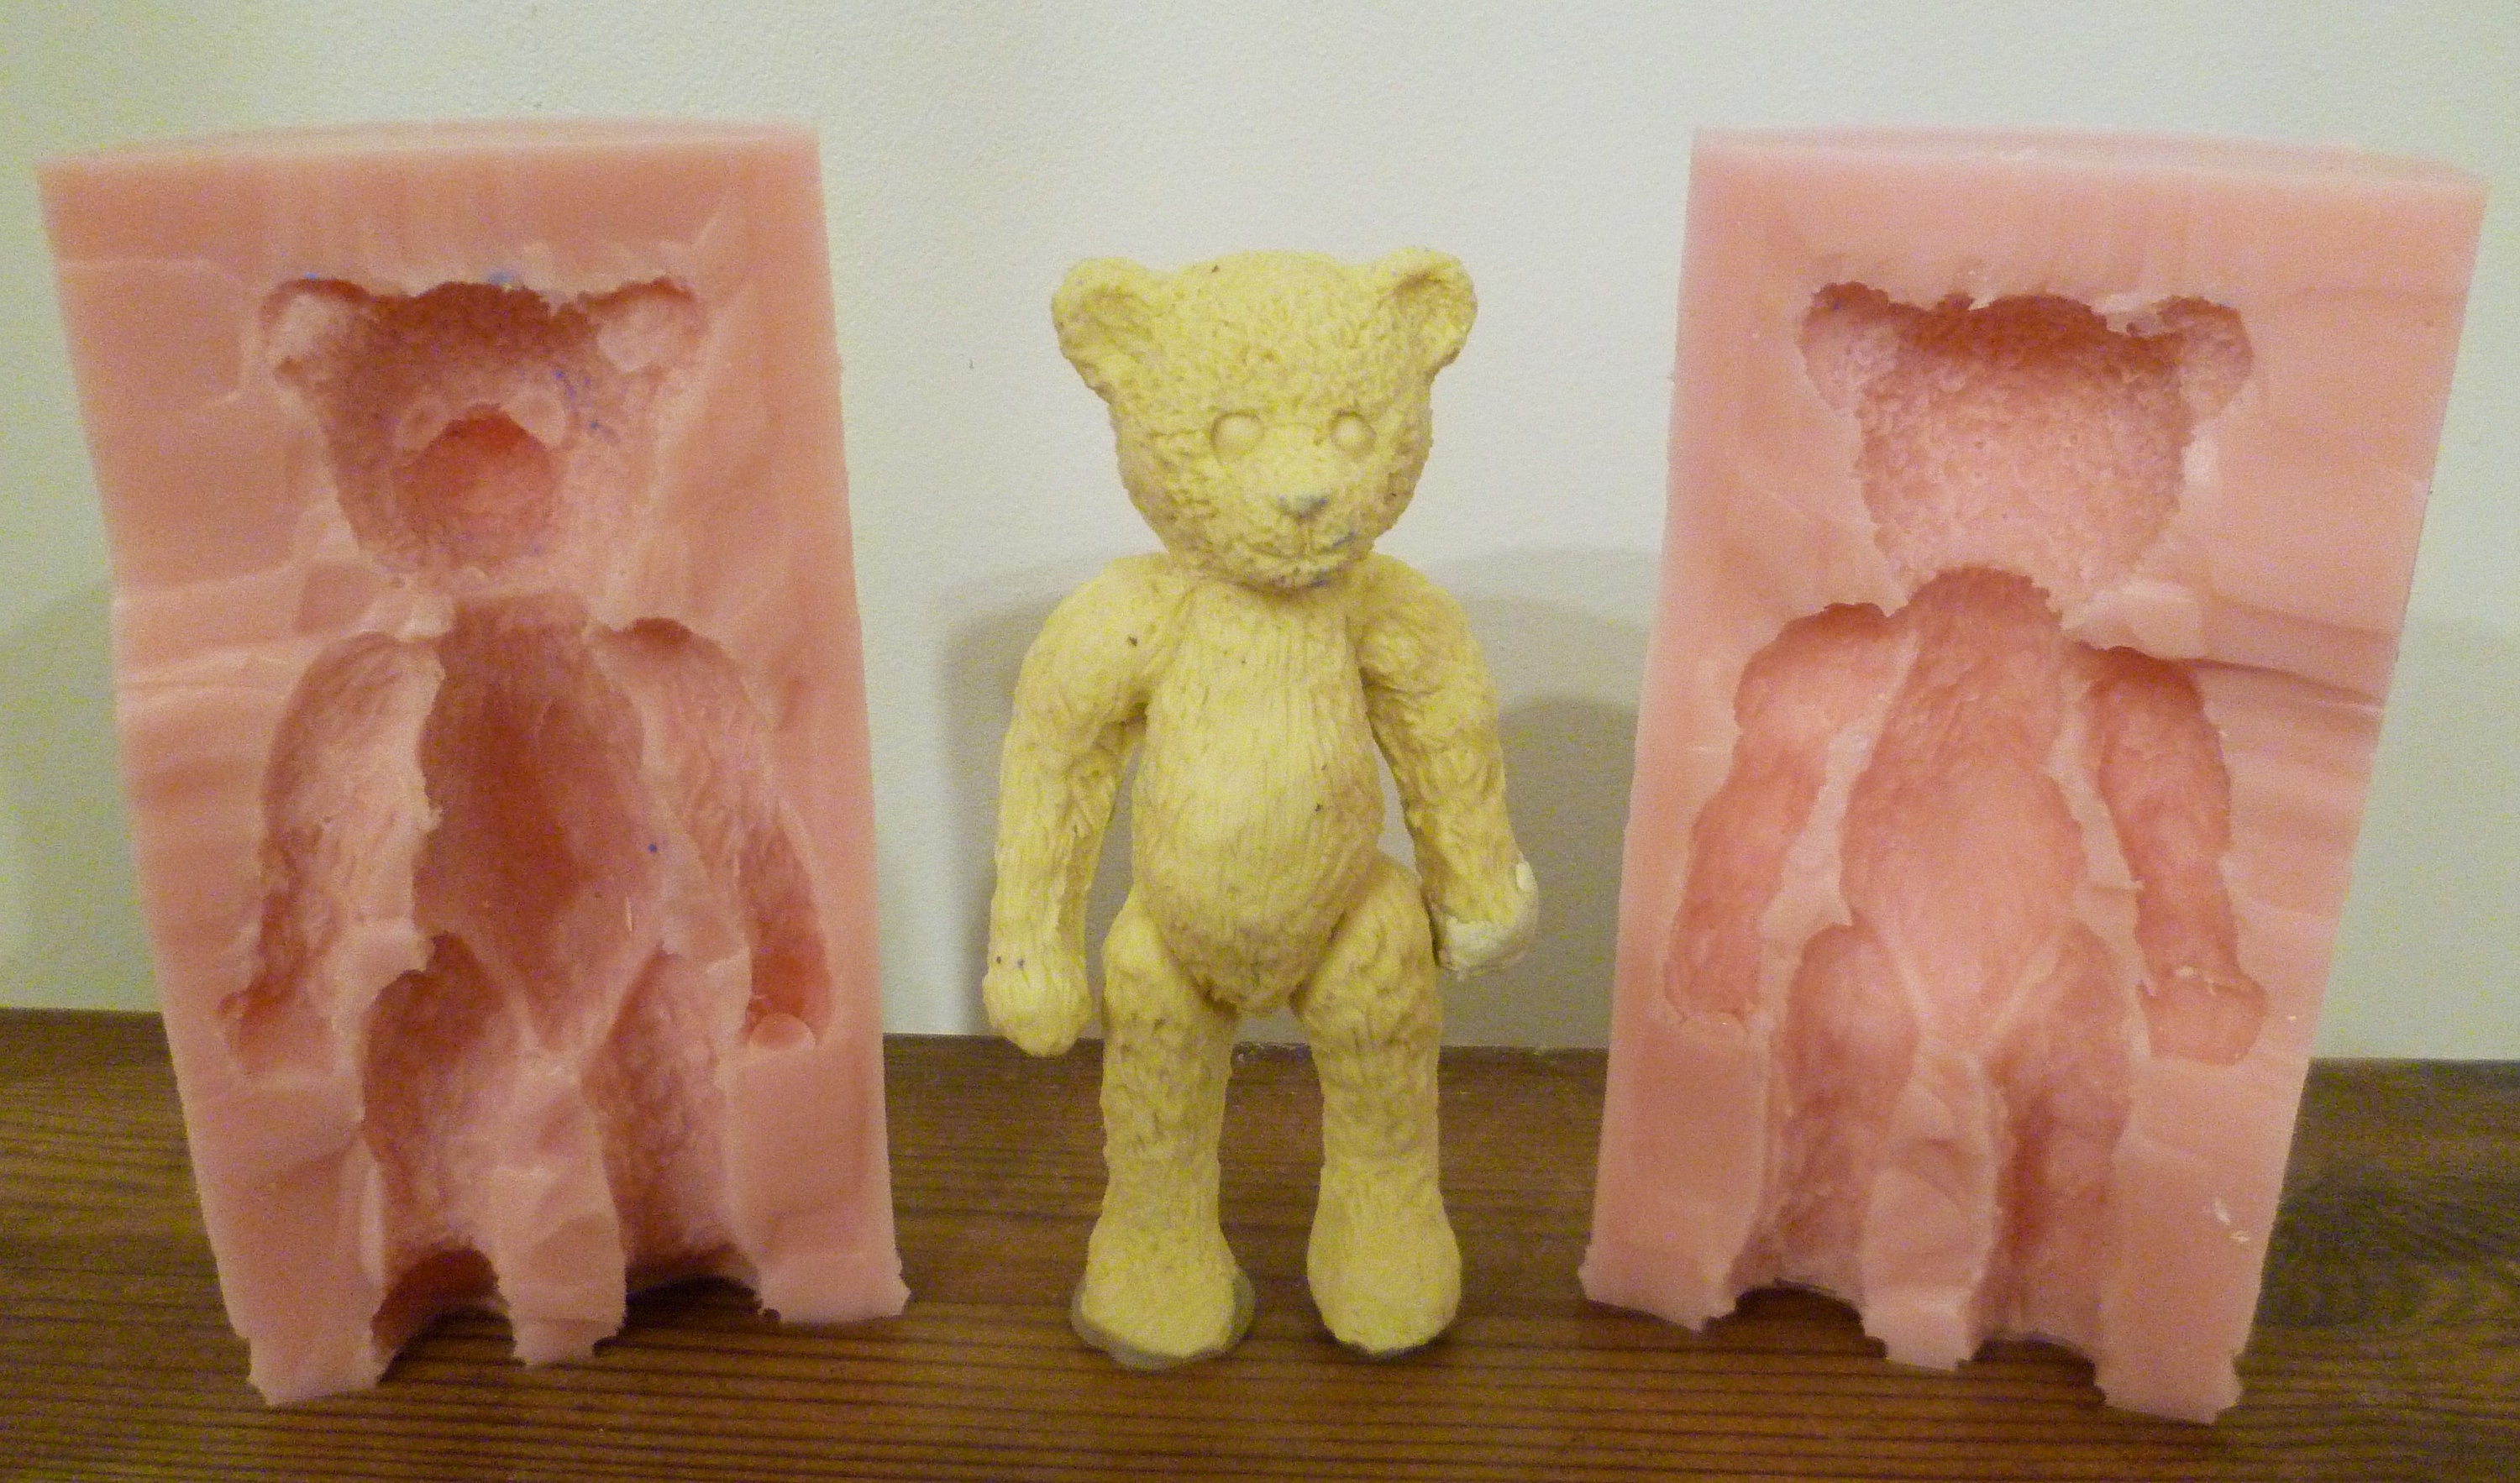 Bumbly Bear 3D ours en peluche en silicone avec pull moule à glaçons - moule  de